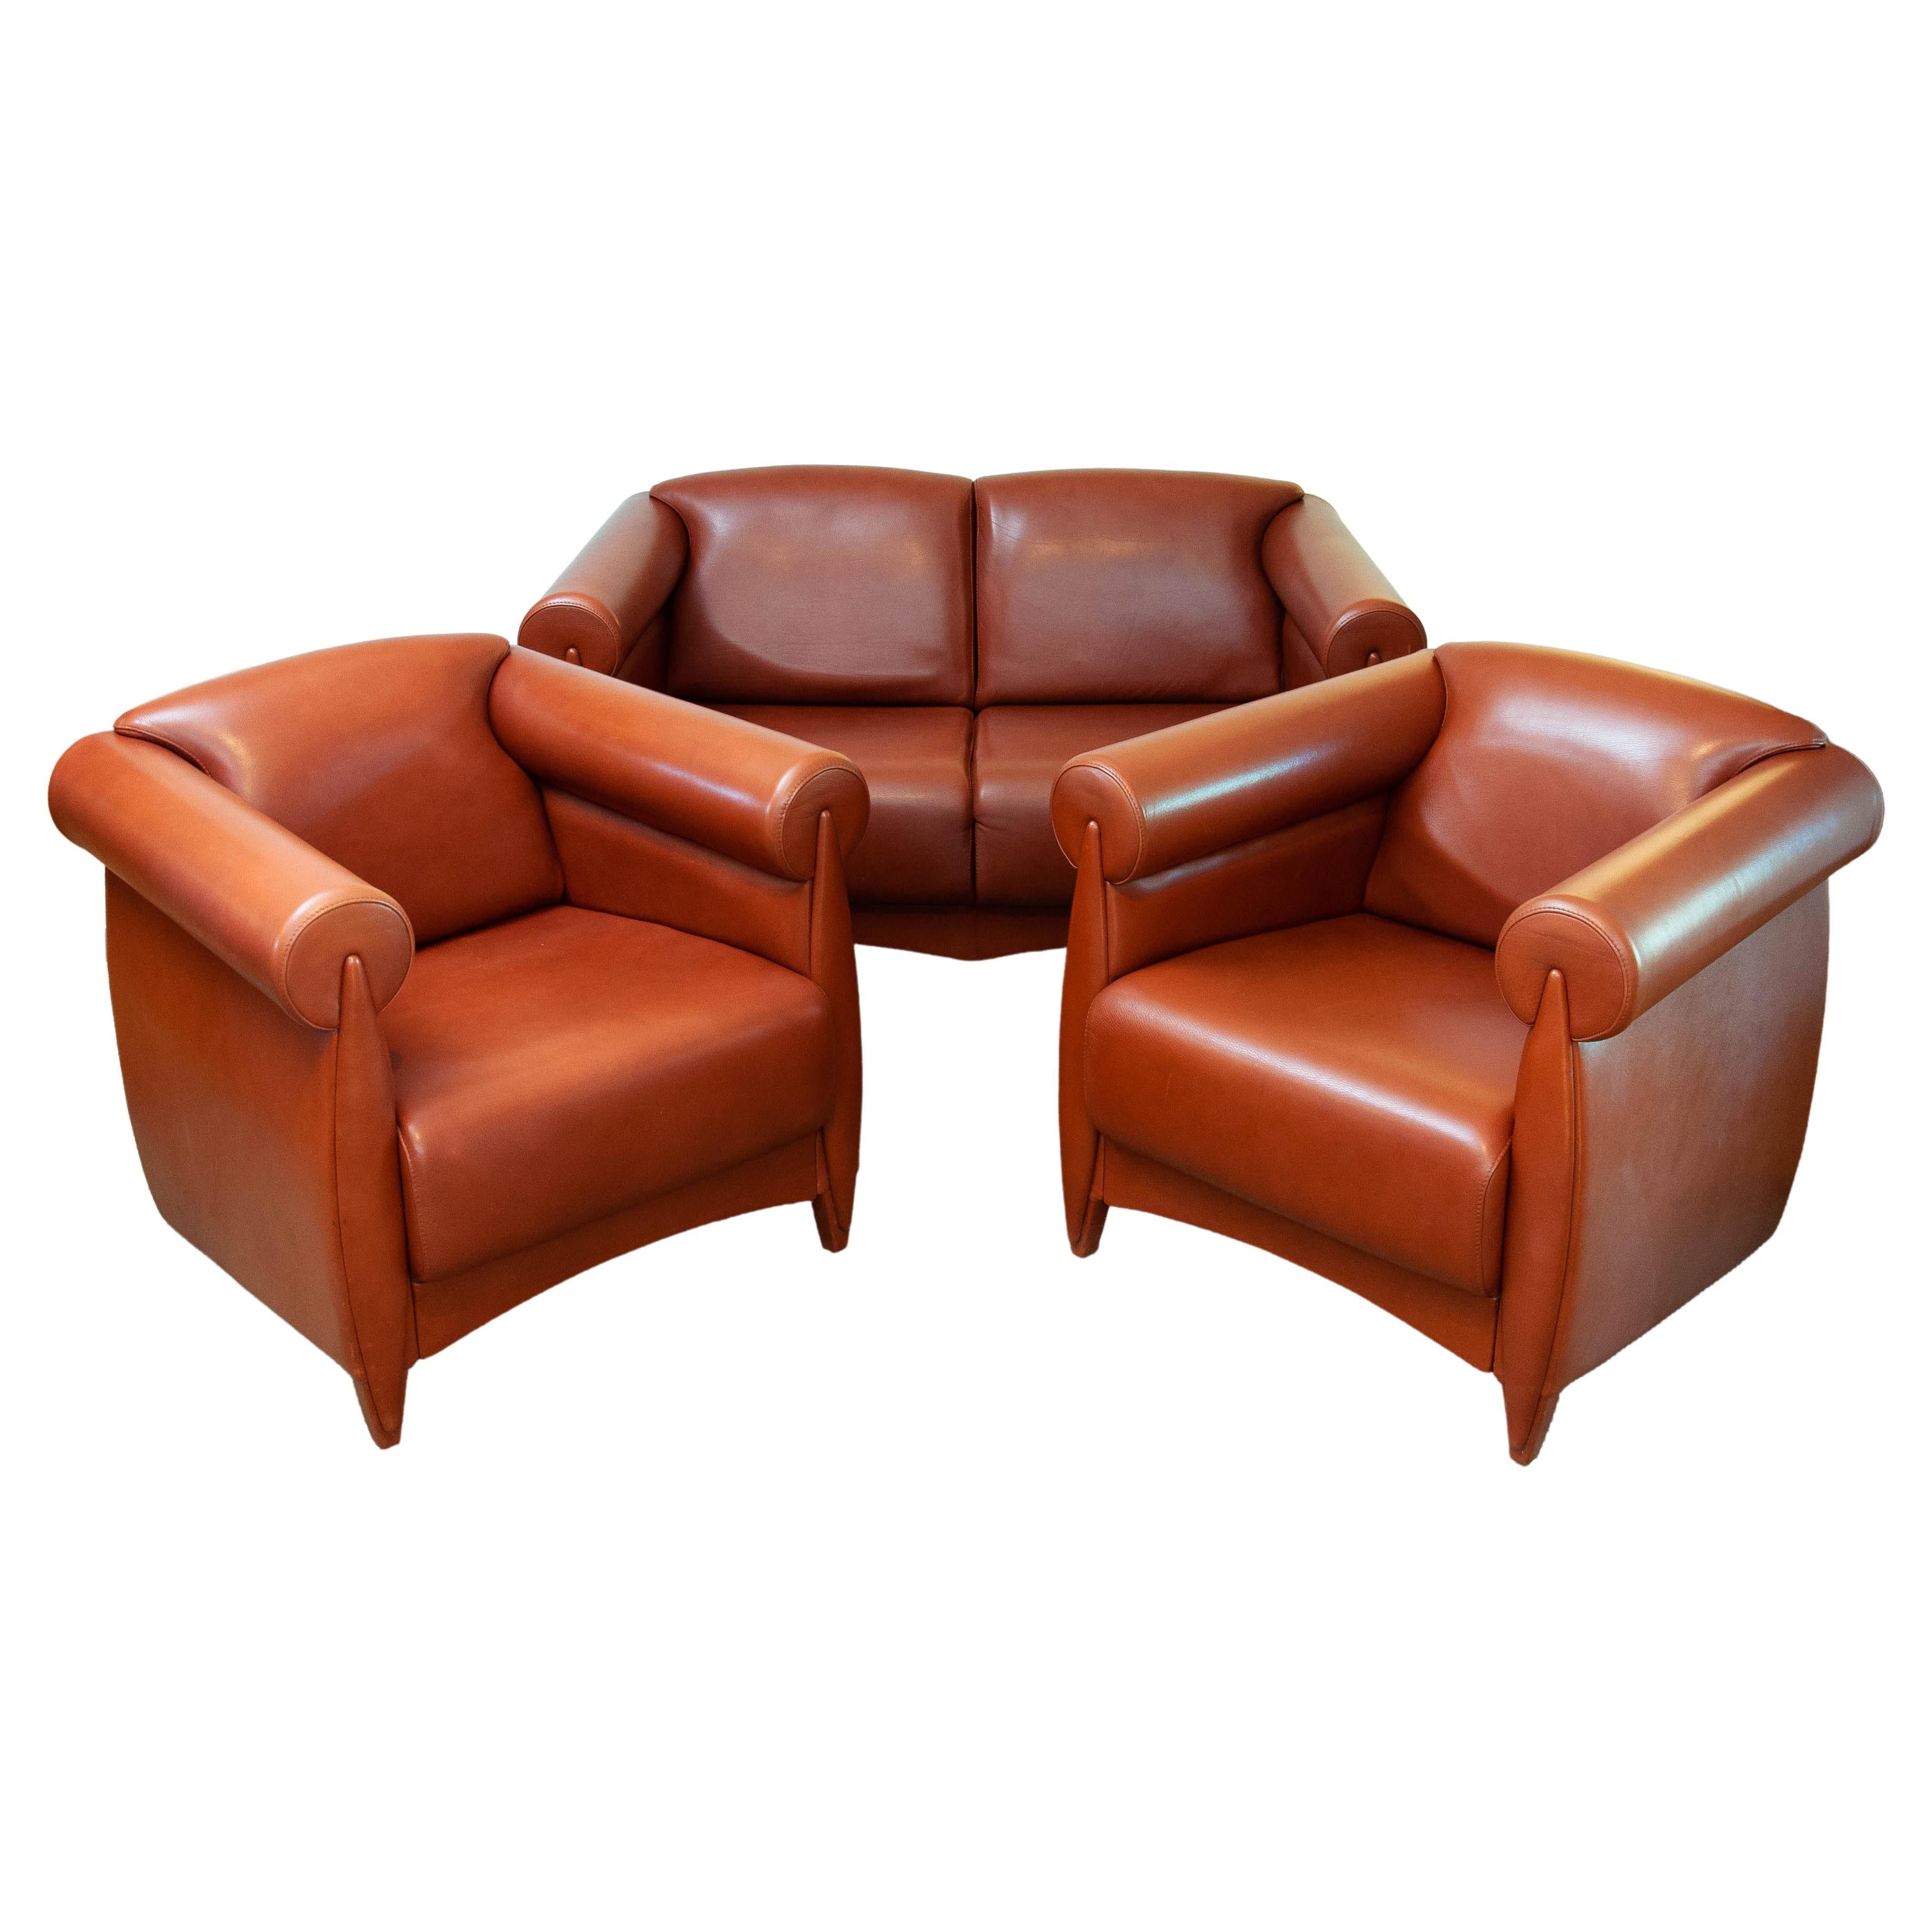 The Moderns Modern Deco Seating Group in Cognac Leather by Klaus Wettergren Denmark (Groupe de sièges art déco modernes 80 en cuir cognac) 